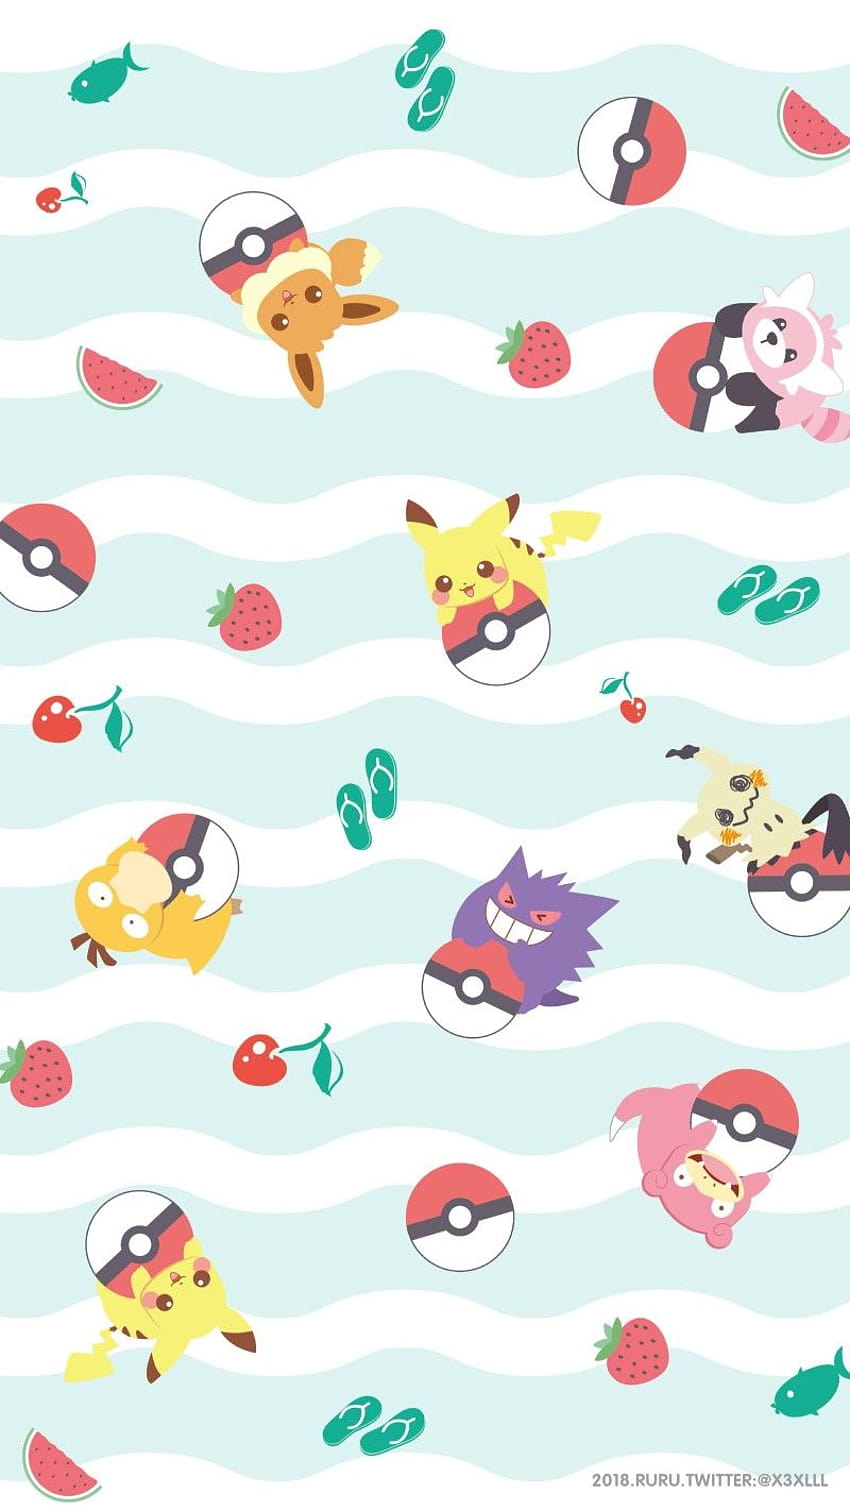 Tường nhà bạn sẽ trở nên đáng yêu và tươi mới hơn với những hình nền Pokemon Kawaii siêu dễ thương này. Hãy nhanh chân download ngay để trang trí cho điện thoại hoặc desktop của mình ngay nào!